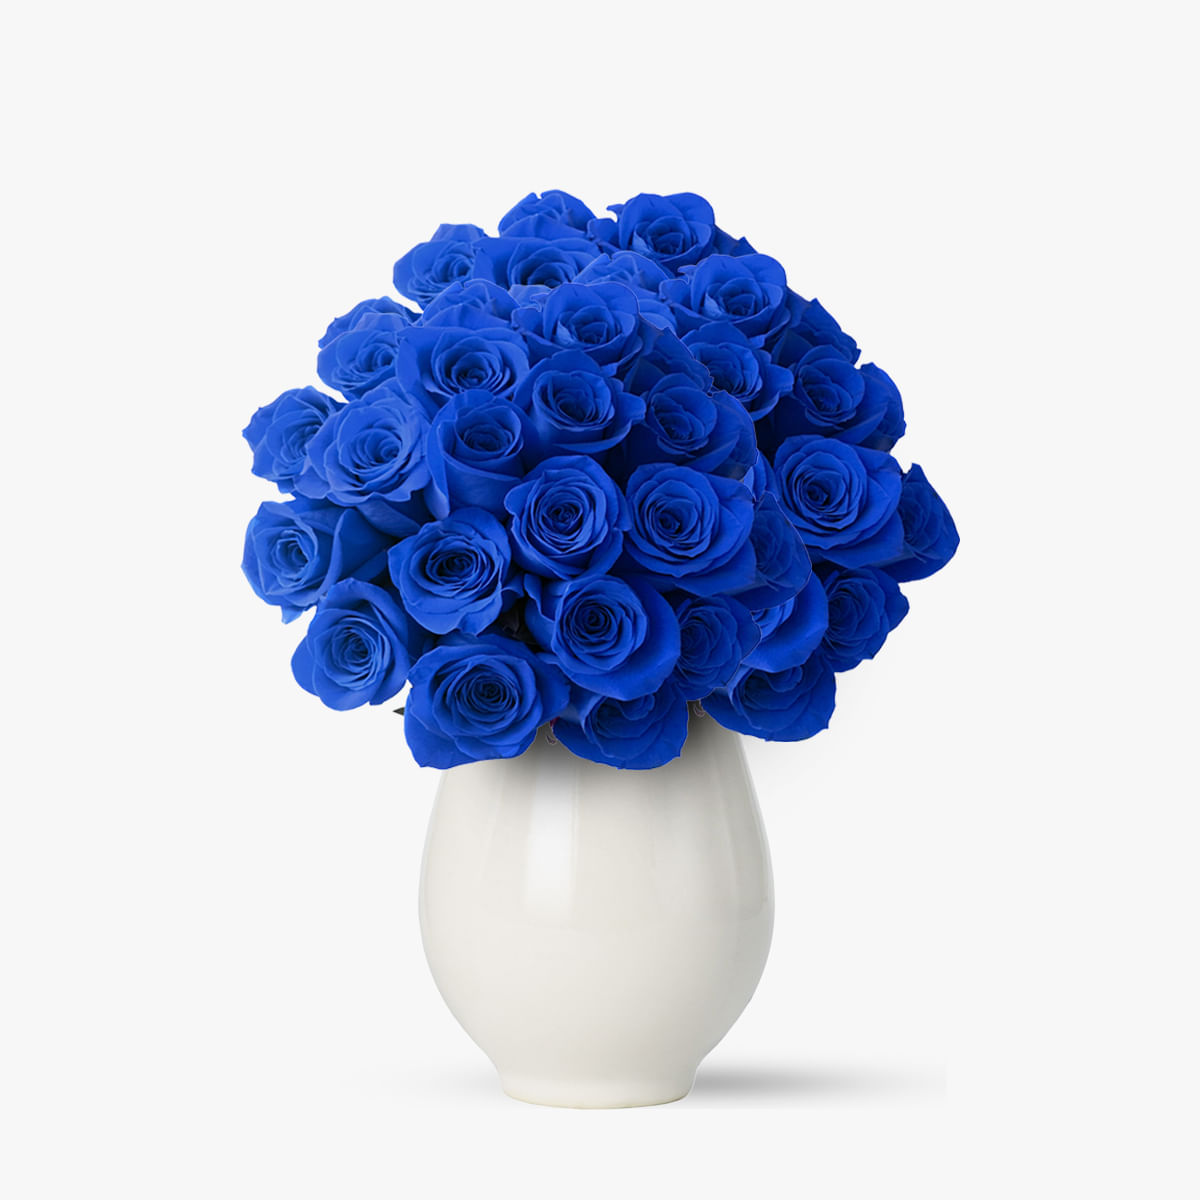 Buchet de 55 trandafiri albastri – Standard albastri